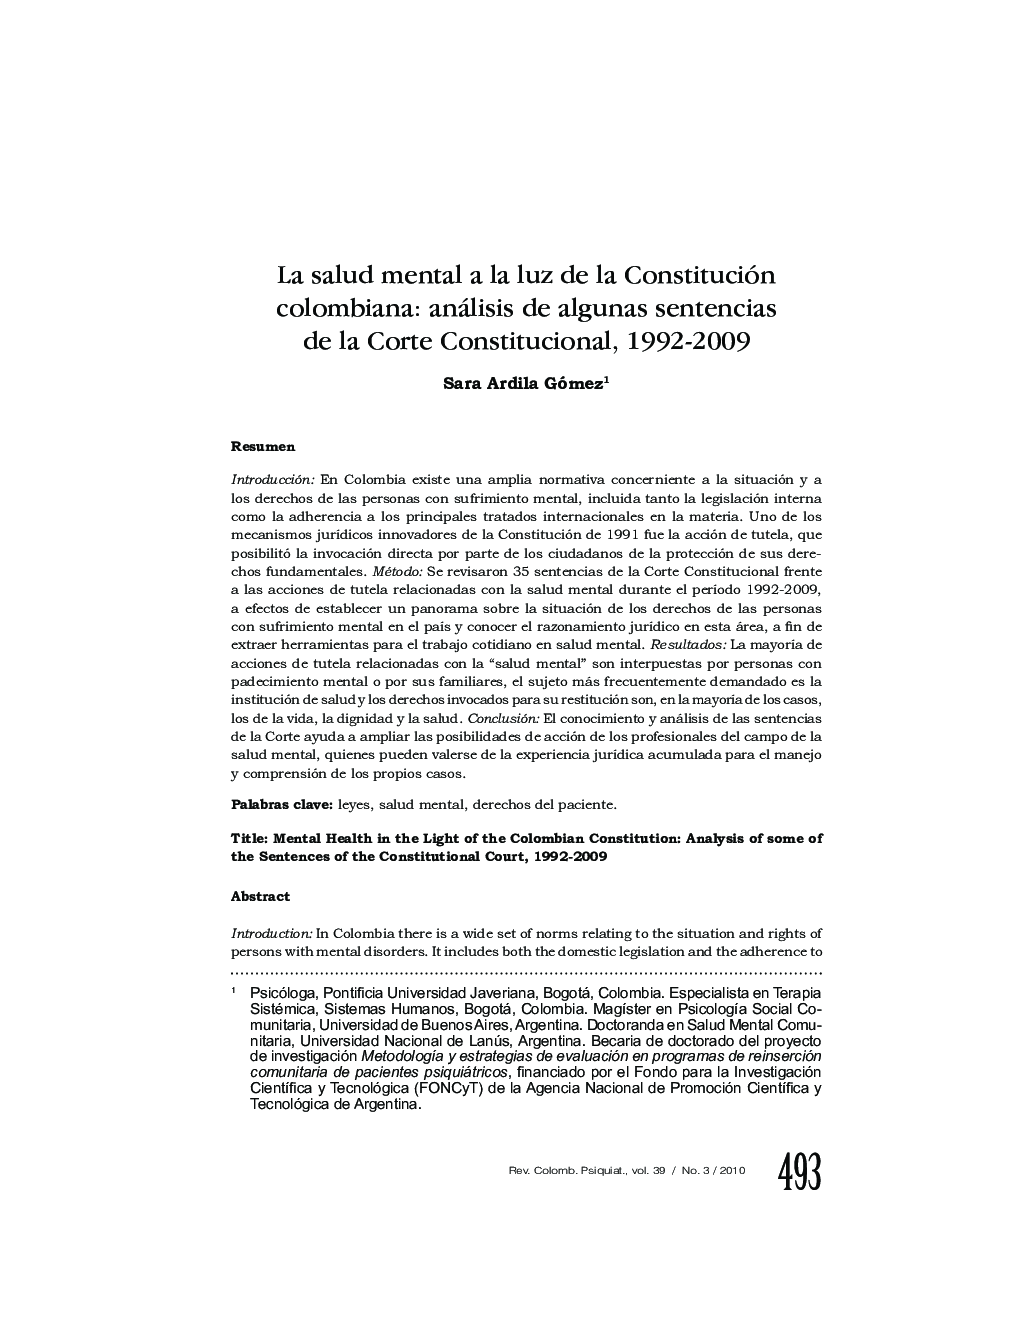 La salud mental a la luz de la Constitución colombiana: análisis de algunas sentencias de la Corte Constitucional, 1992-2009